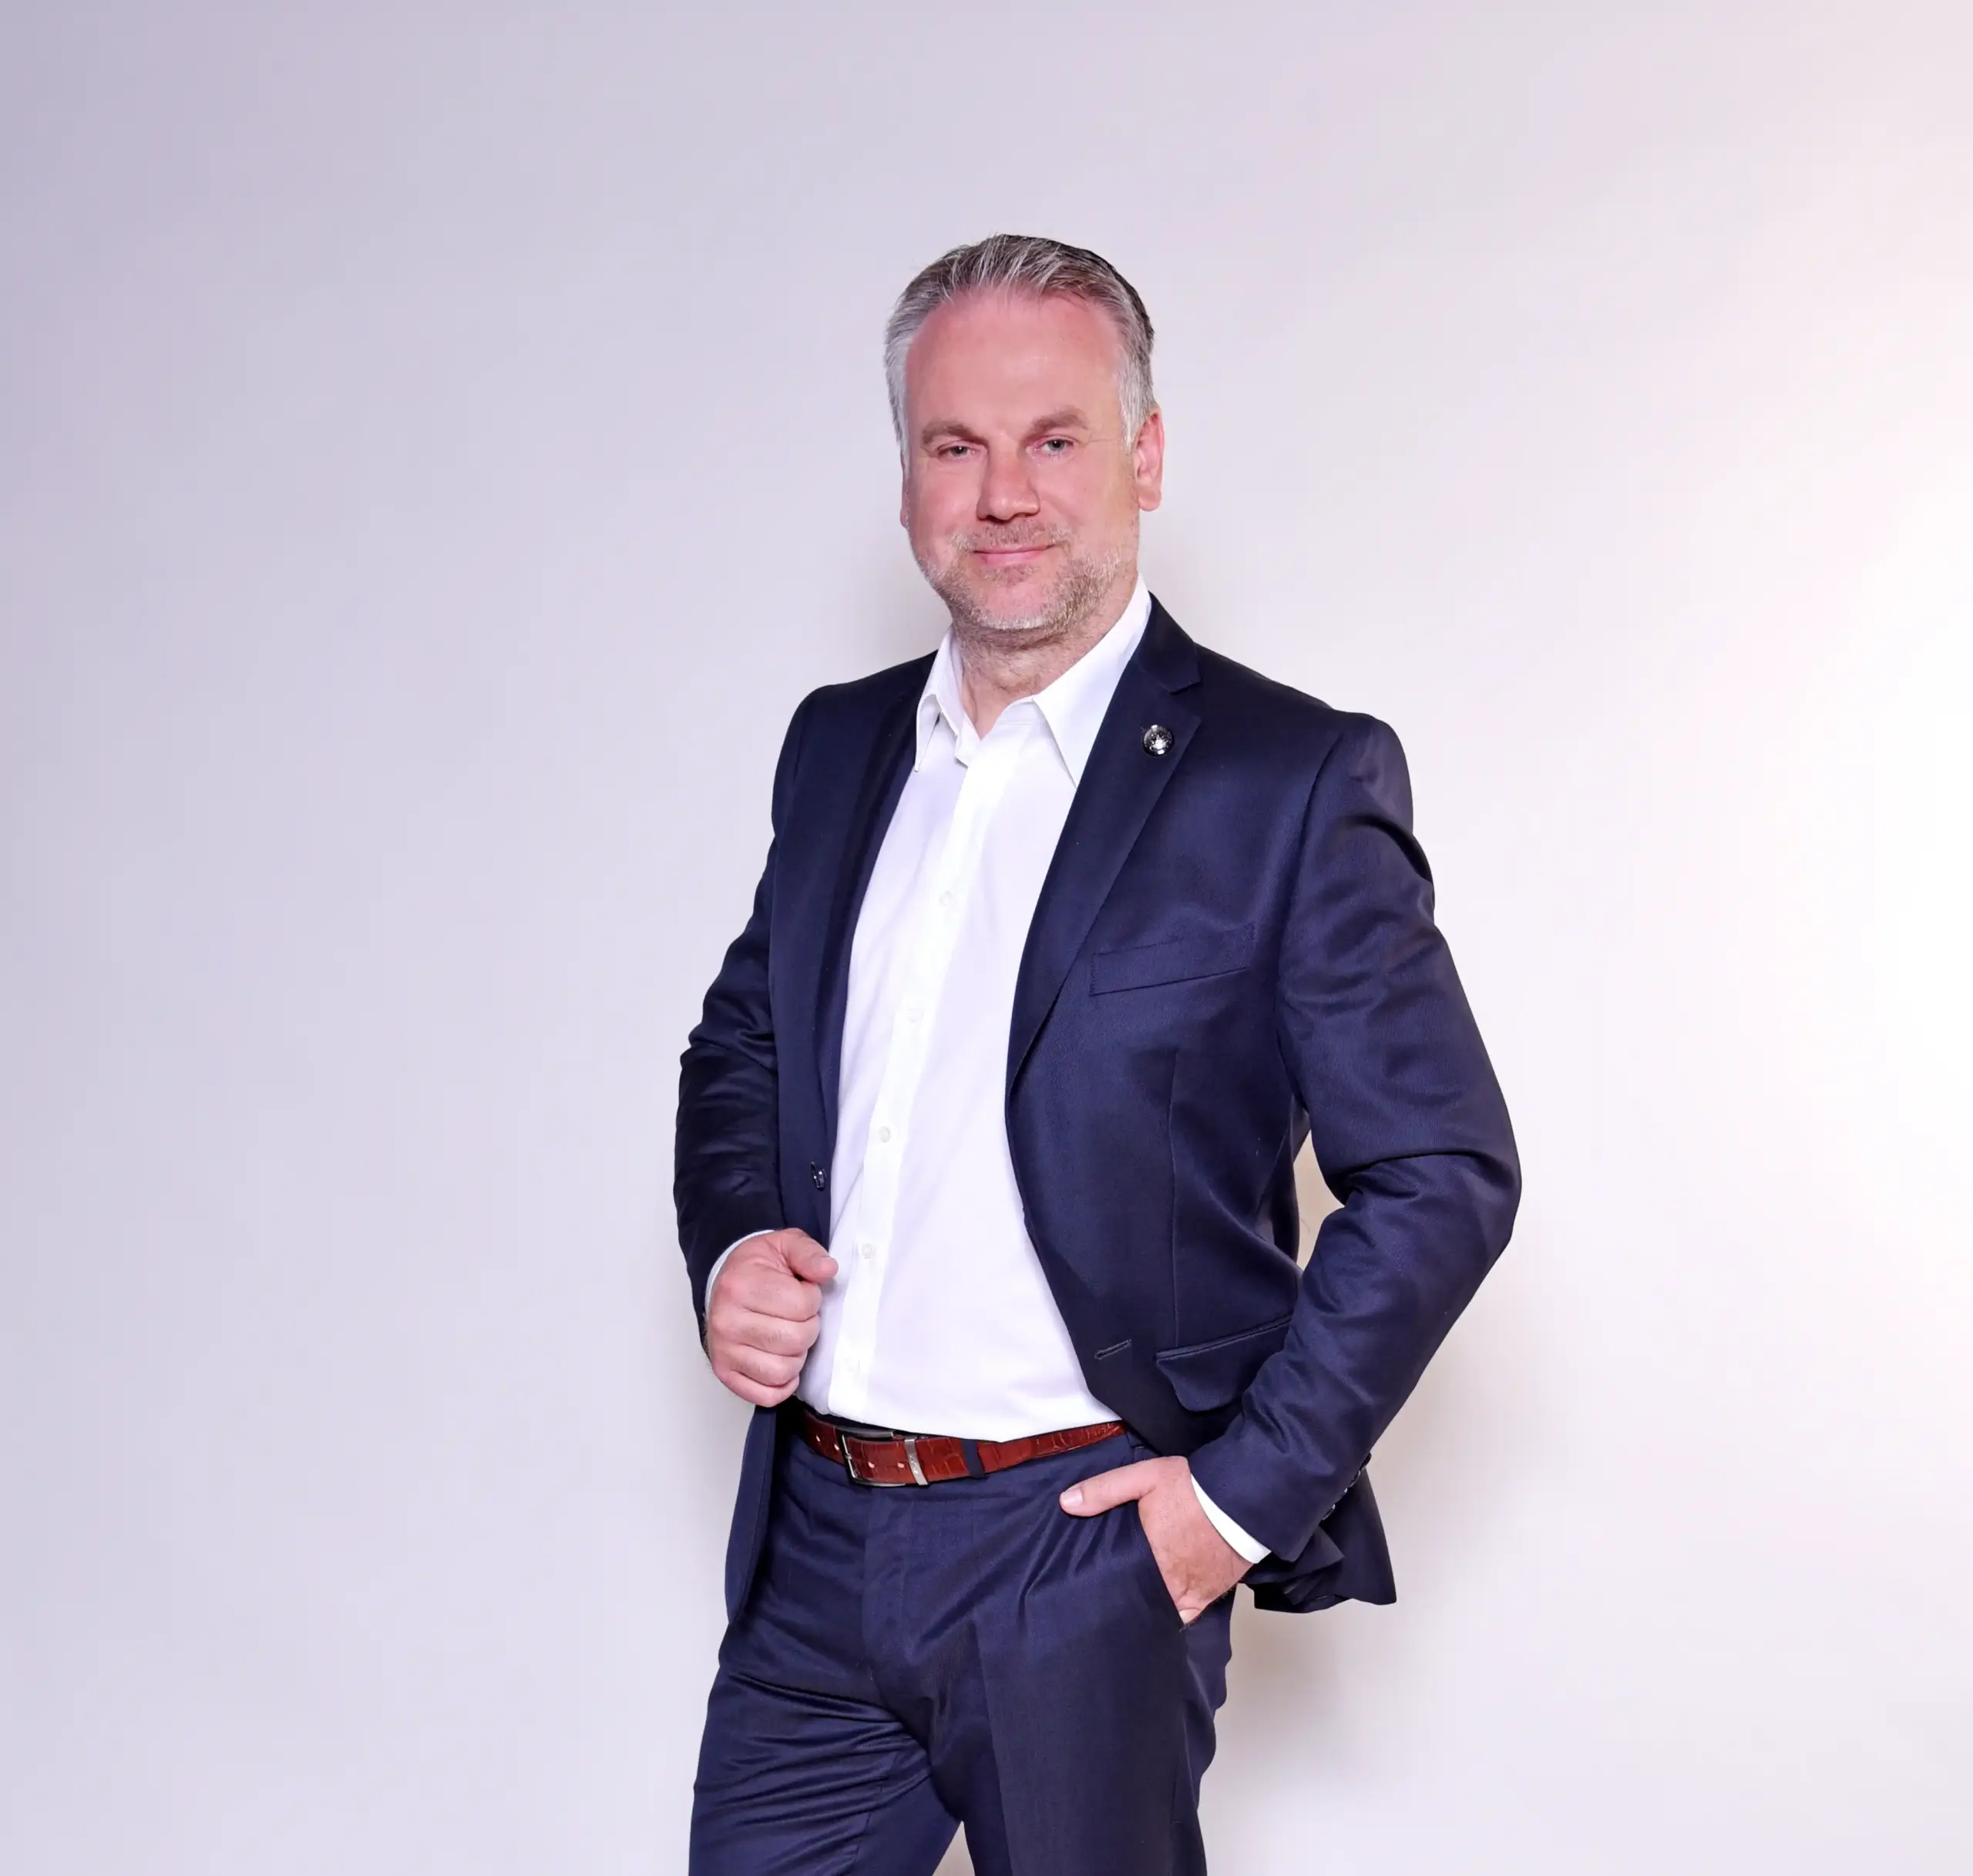 Christian Vogt, Geschäftsführer von ONOX, in professioneller Pose vor einer Betonwand